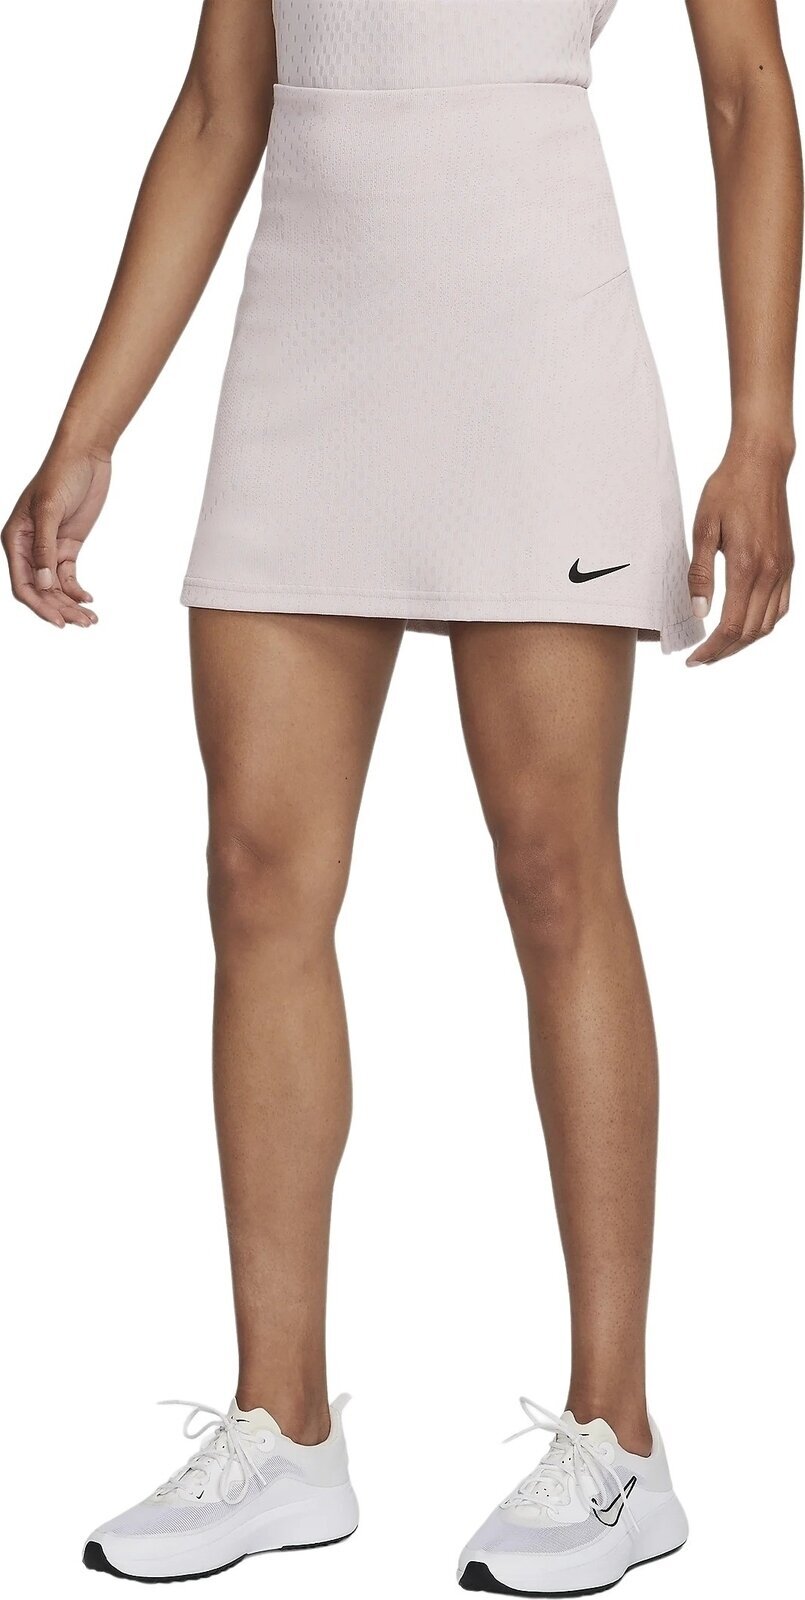 Gonne e vestiti Nike Dri-Fit ADV Tour Skirt Platinum Violet/Black S